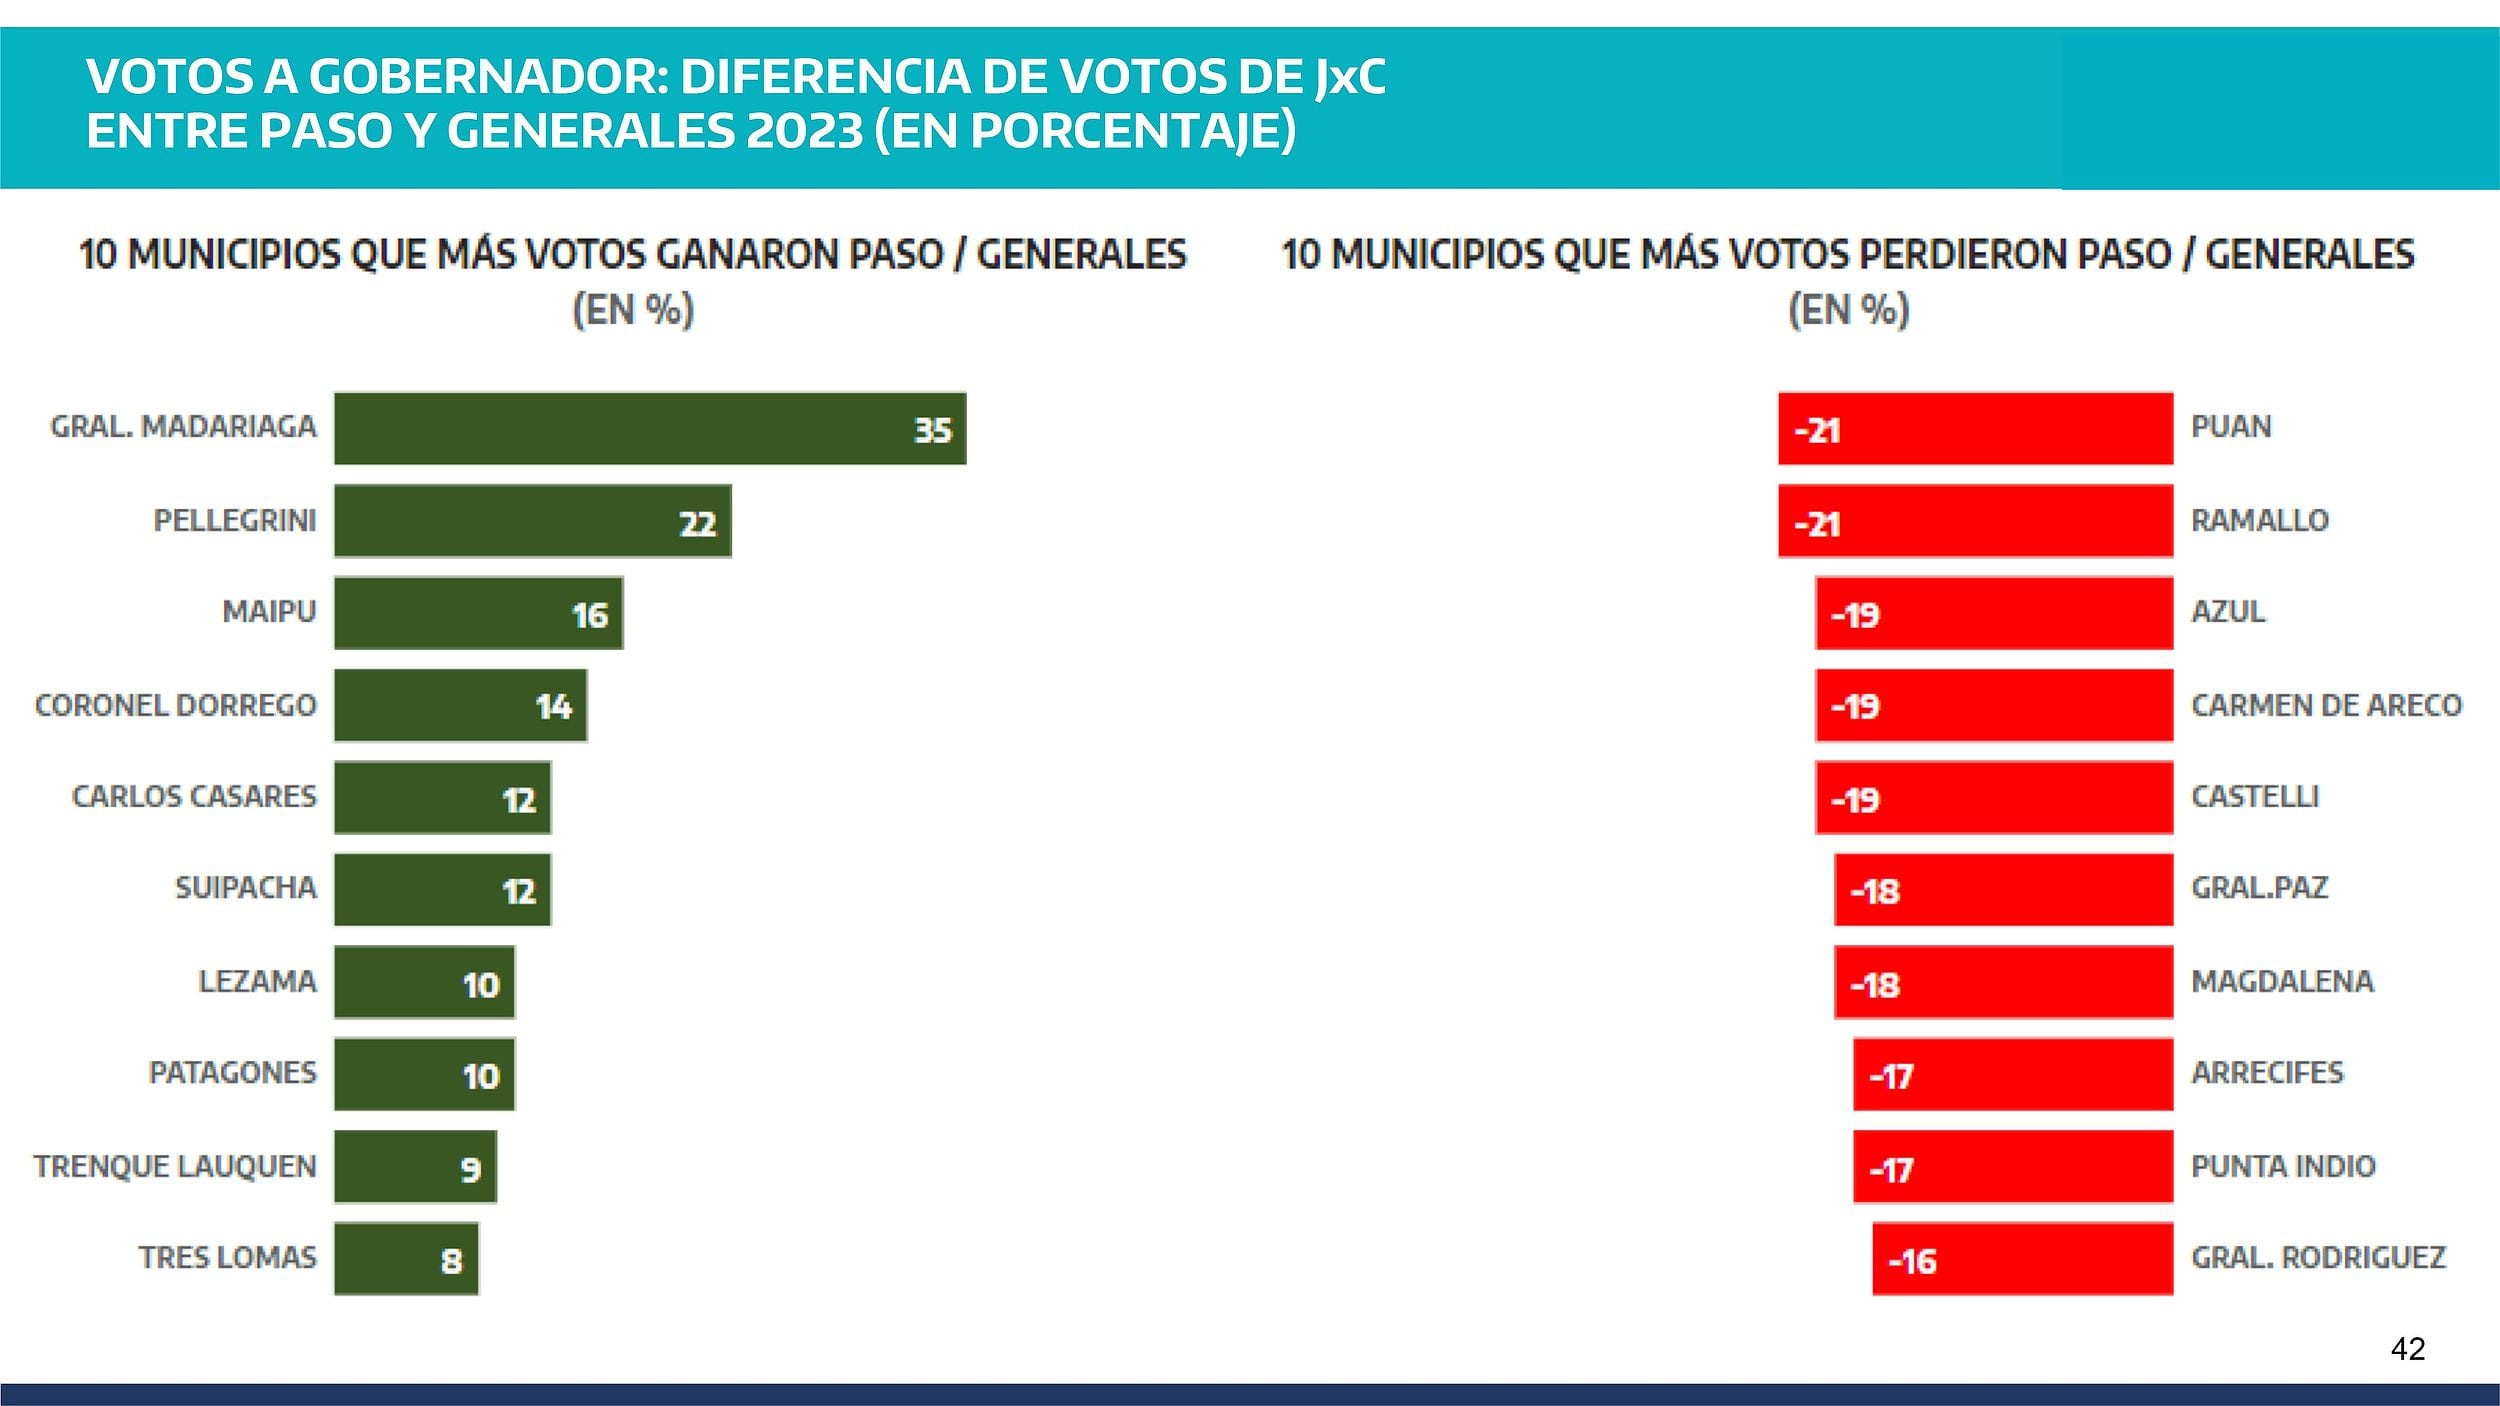 Votos a Gobernador: diferencia de votos entre JxC entre PASO y generales 2023.